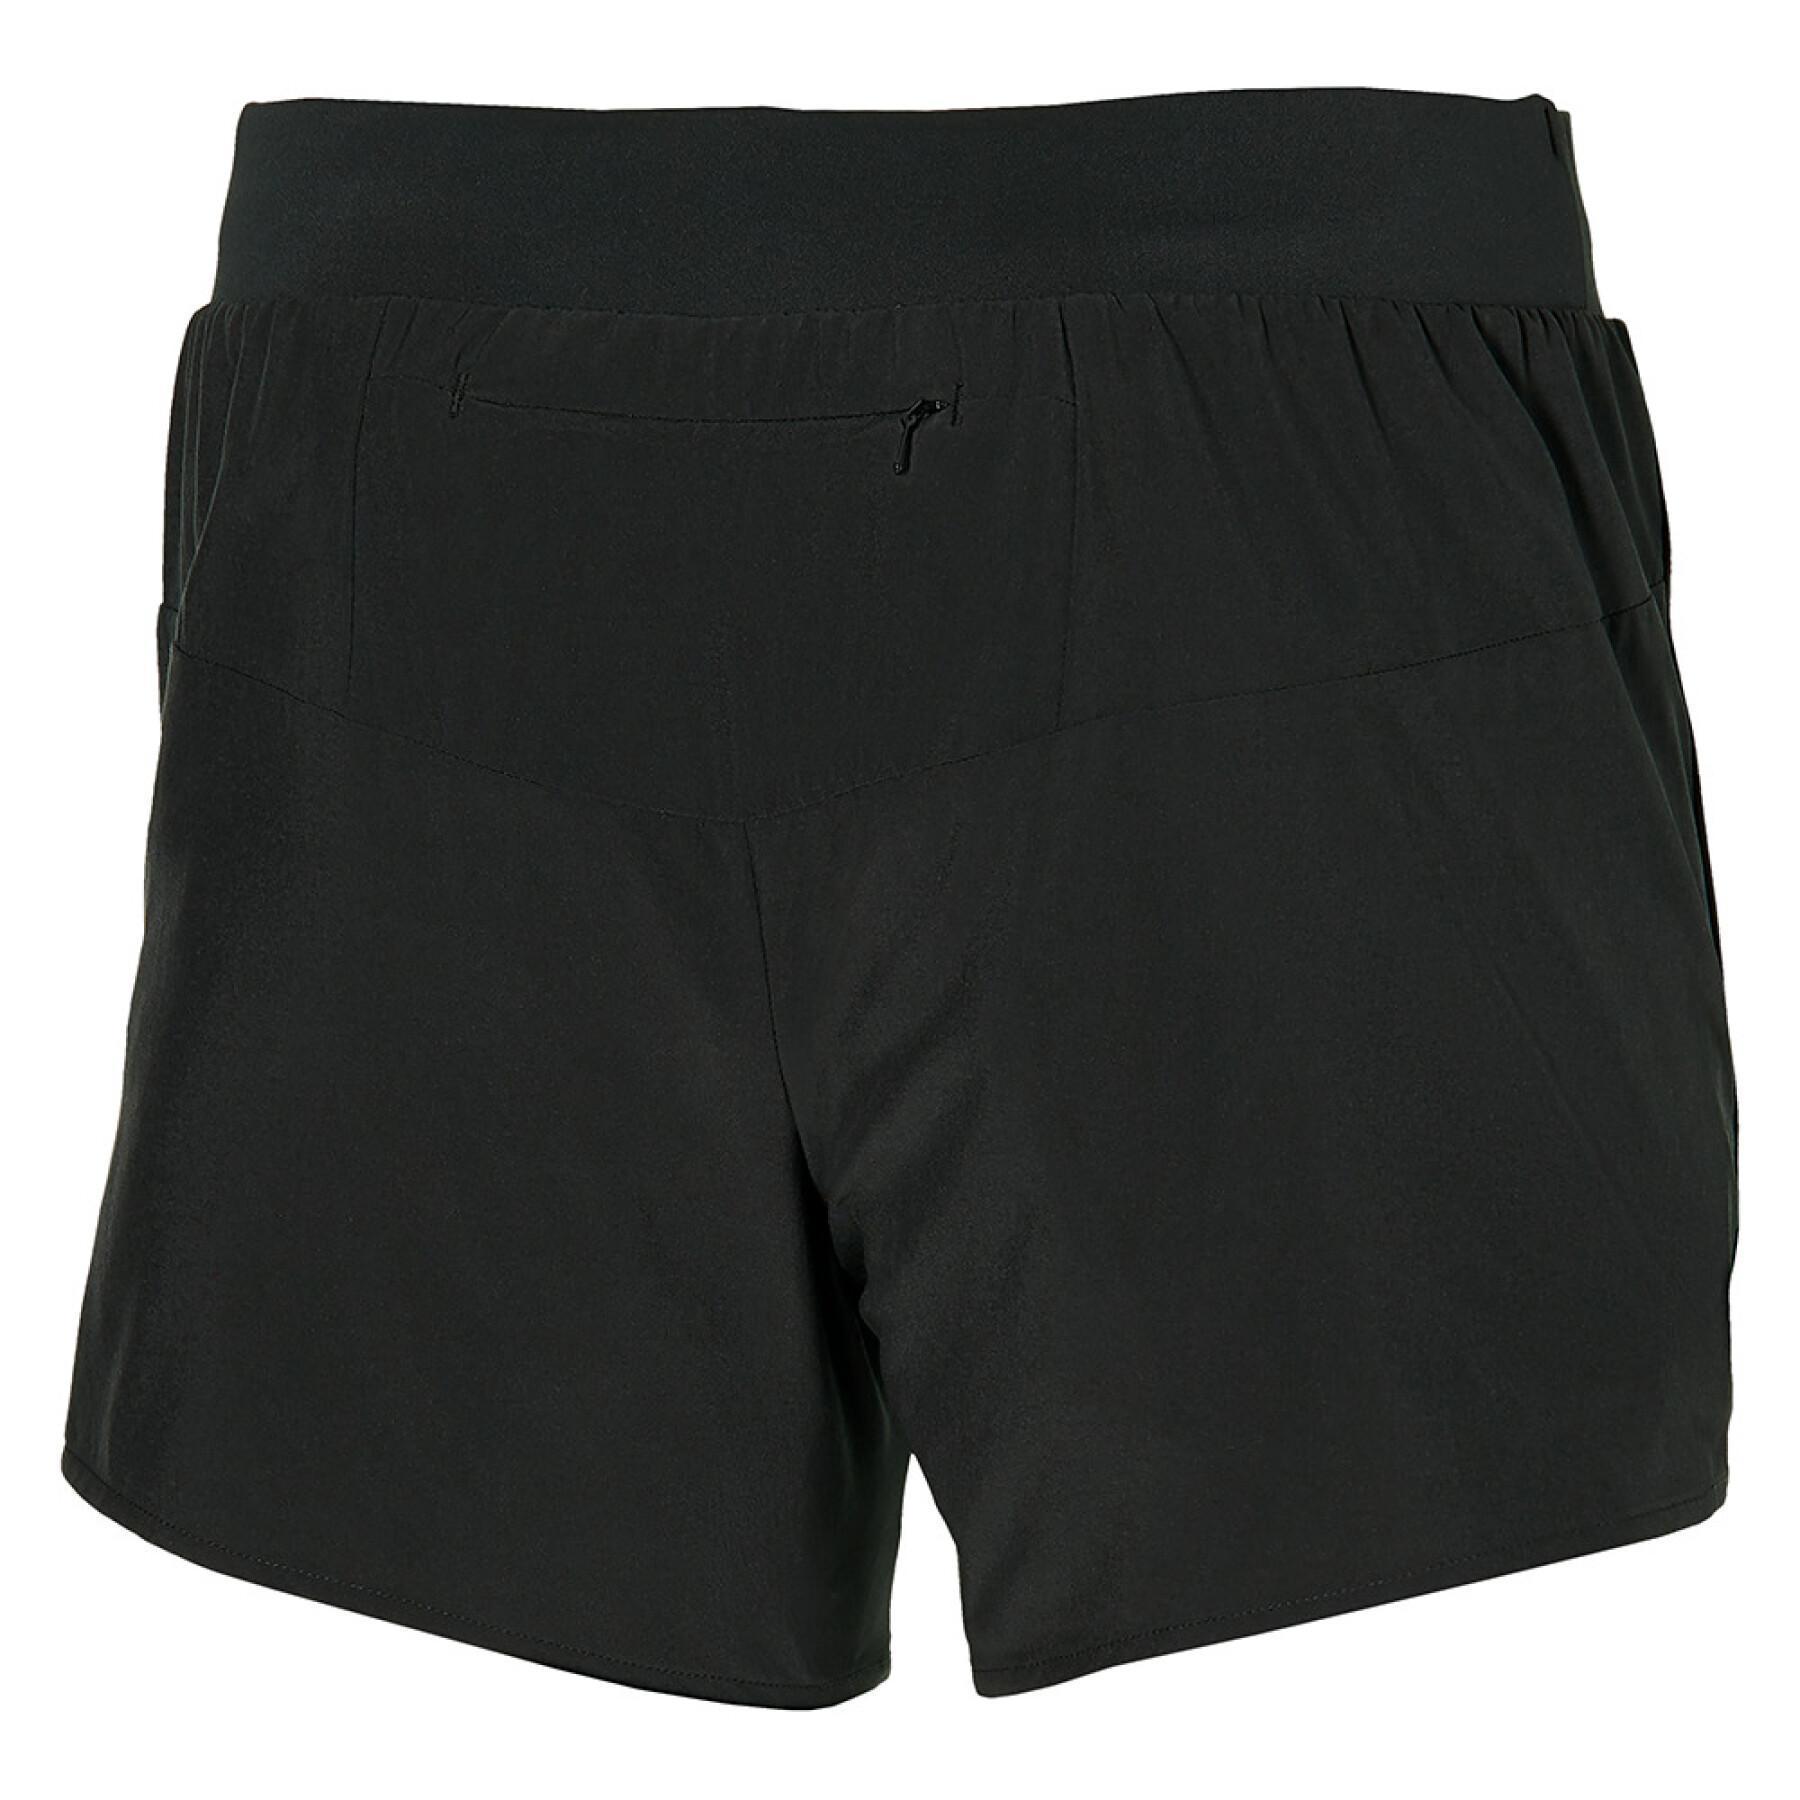 Pantalones cortos de mujer Mizuno Alpha 4.5